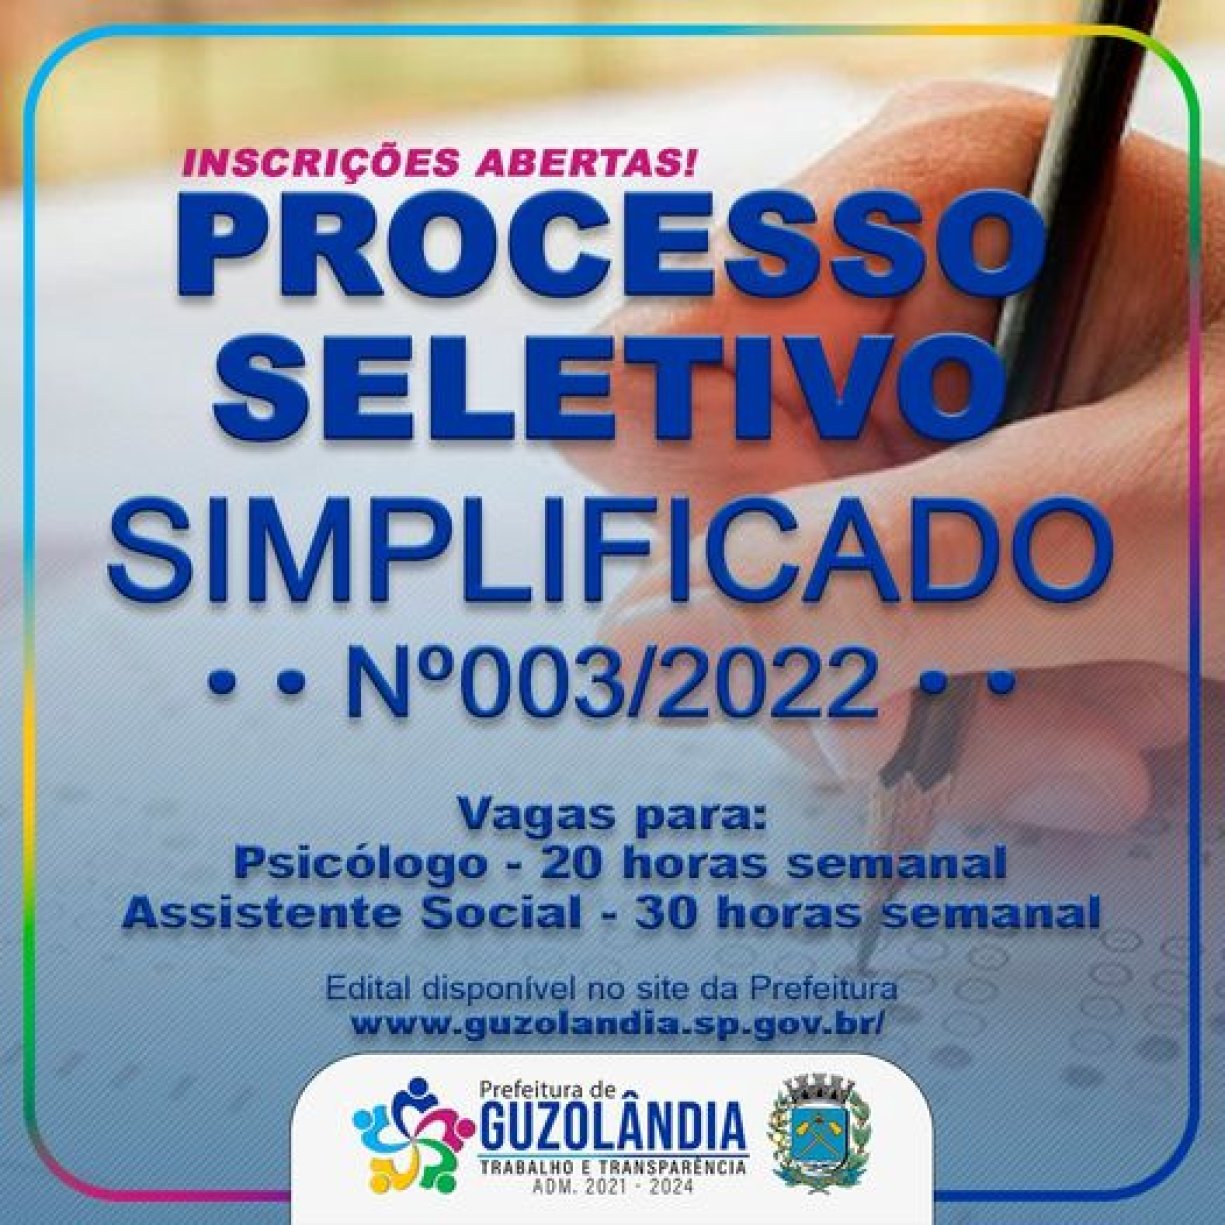 INSCRIÇÕES ABERTAS PROCESSO SELETIVO SIMPLIFICADO Nº03/2022, VAGAS PARA PSICÓLOGO E ASSISTENTE SOCIAL EM GUZOLÂNDIA